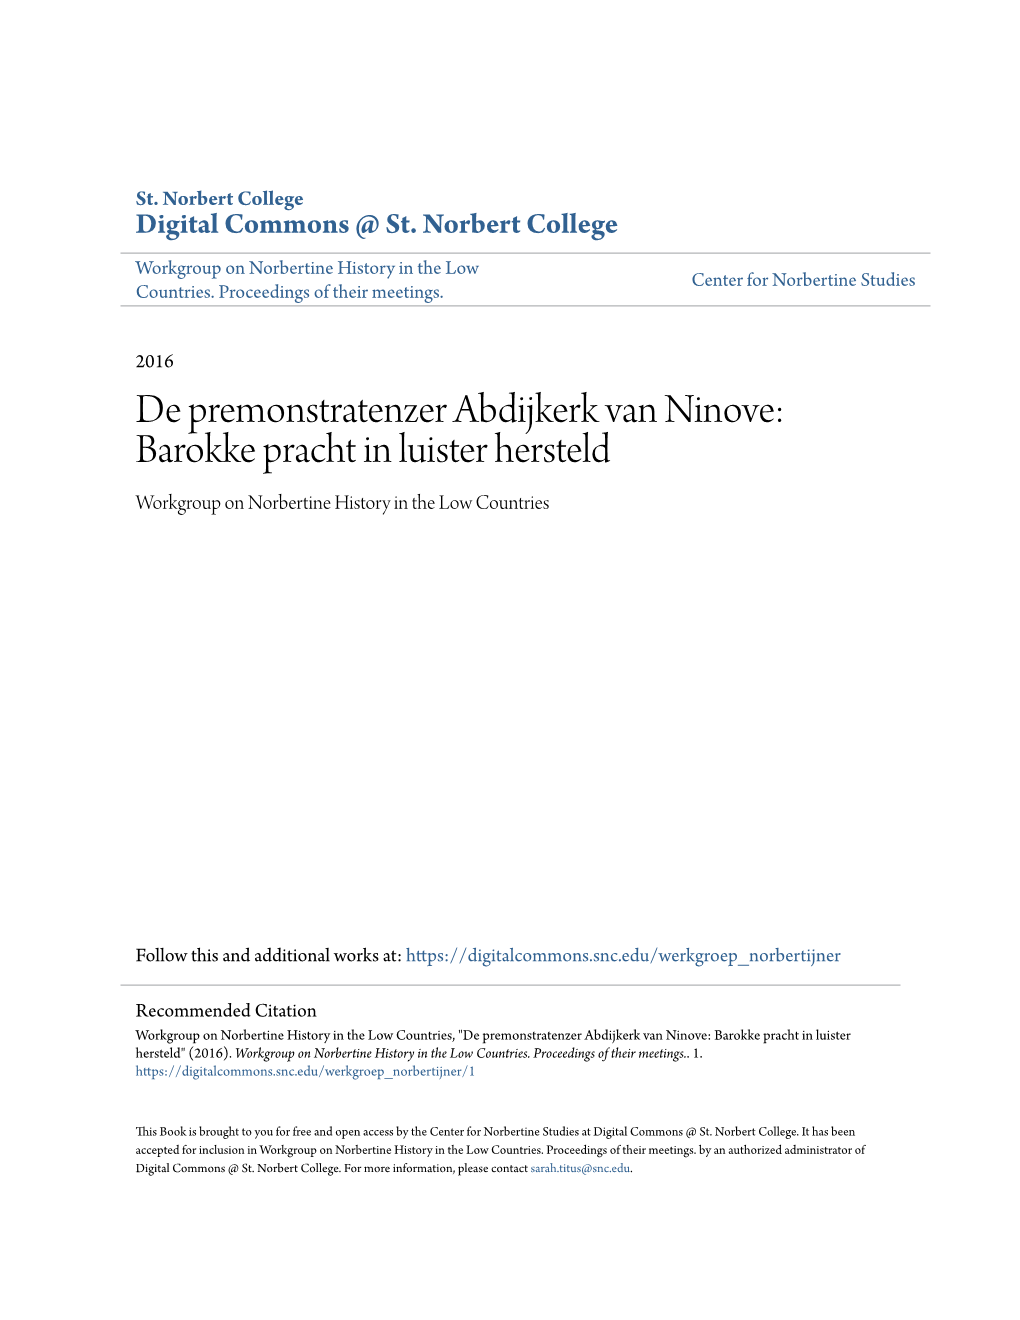 De Premonstratenzer Abdijkerk Van Ninove: Barokke Pracht in Luister Hersteld Workgroup on Norbertine History in the Low Countries